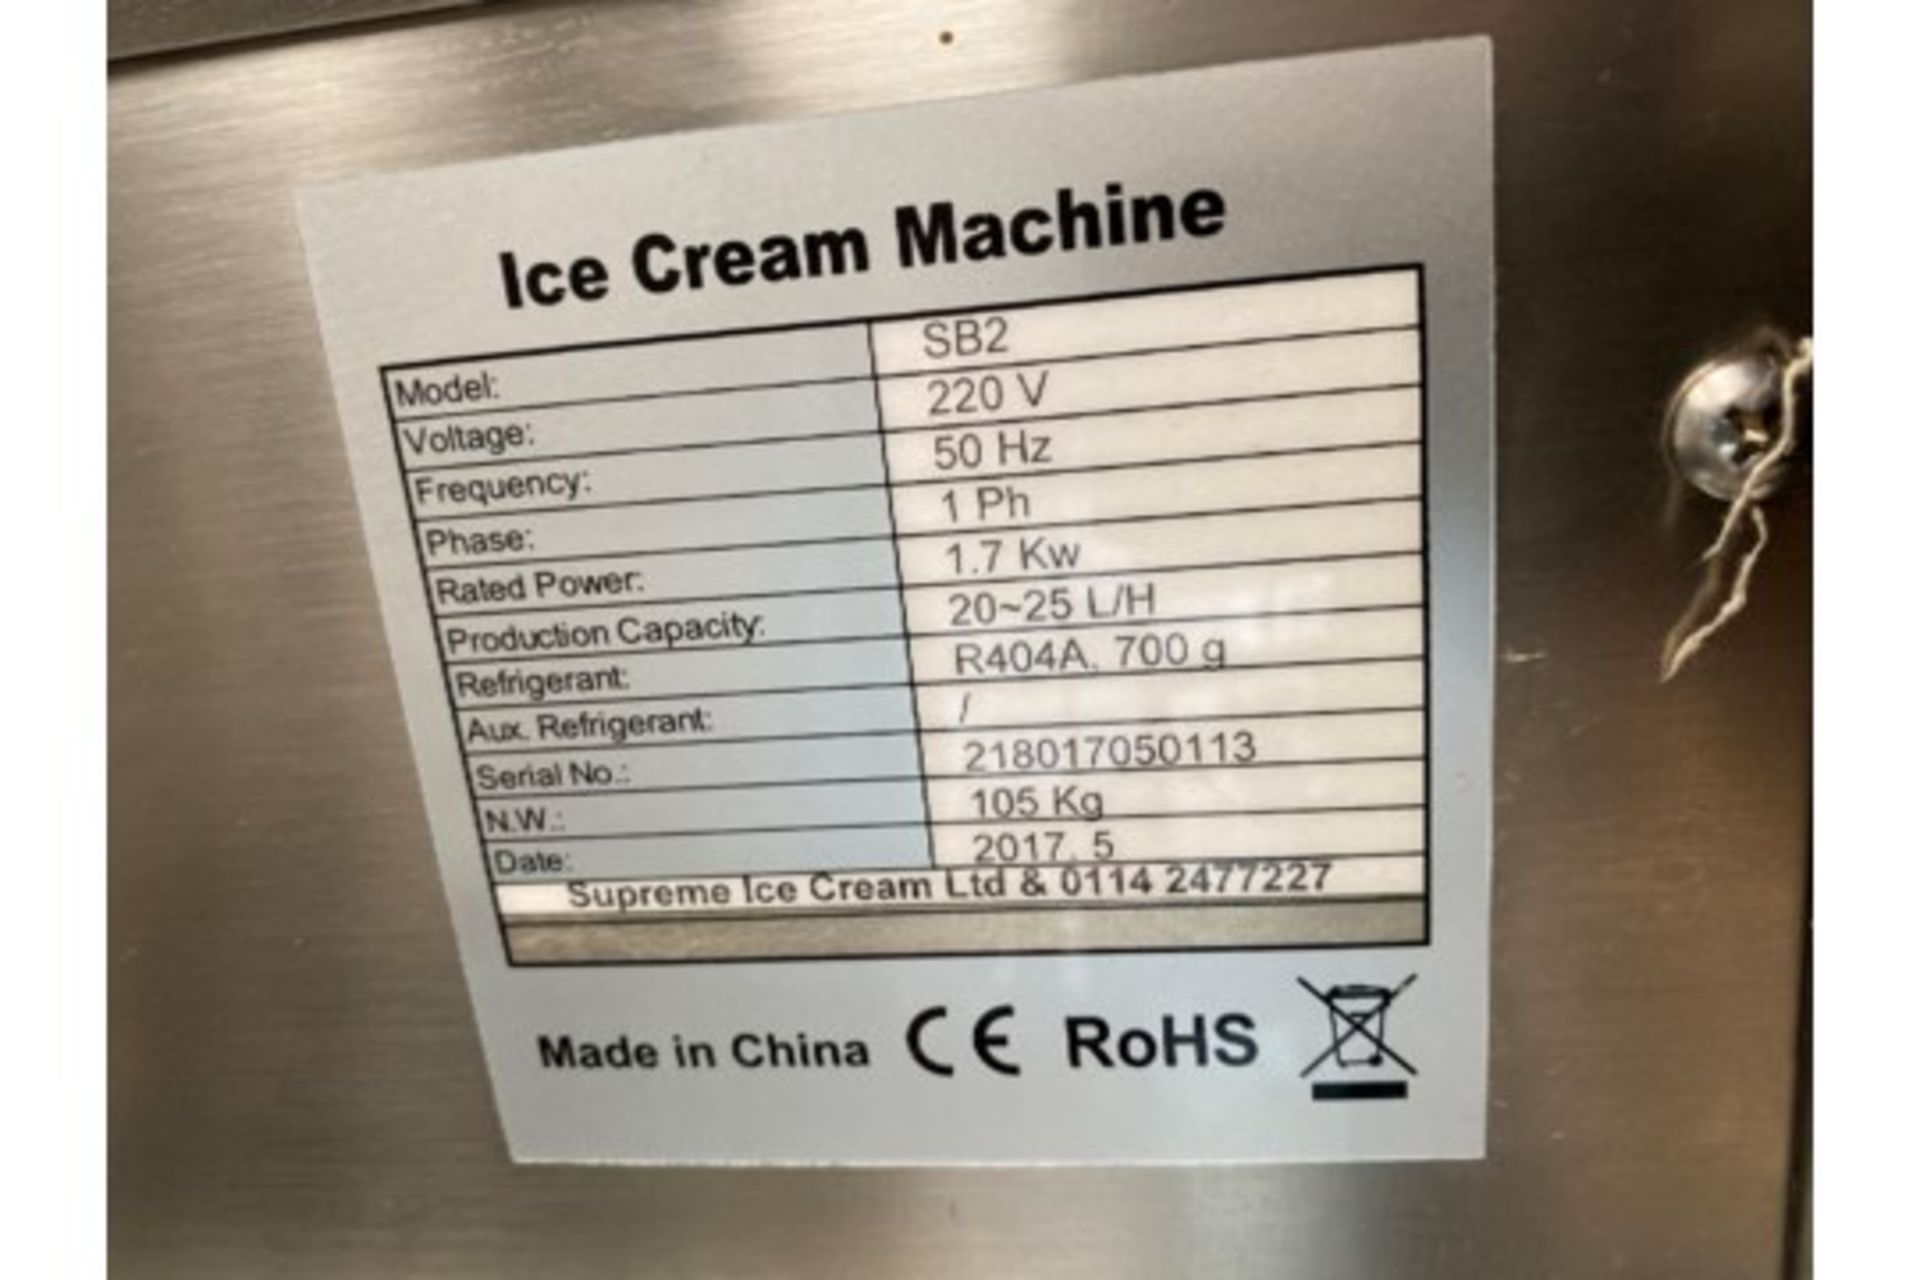 Supreme Ice Cream Machine Model SB2 Batch Freezer - Image 4 of 5